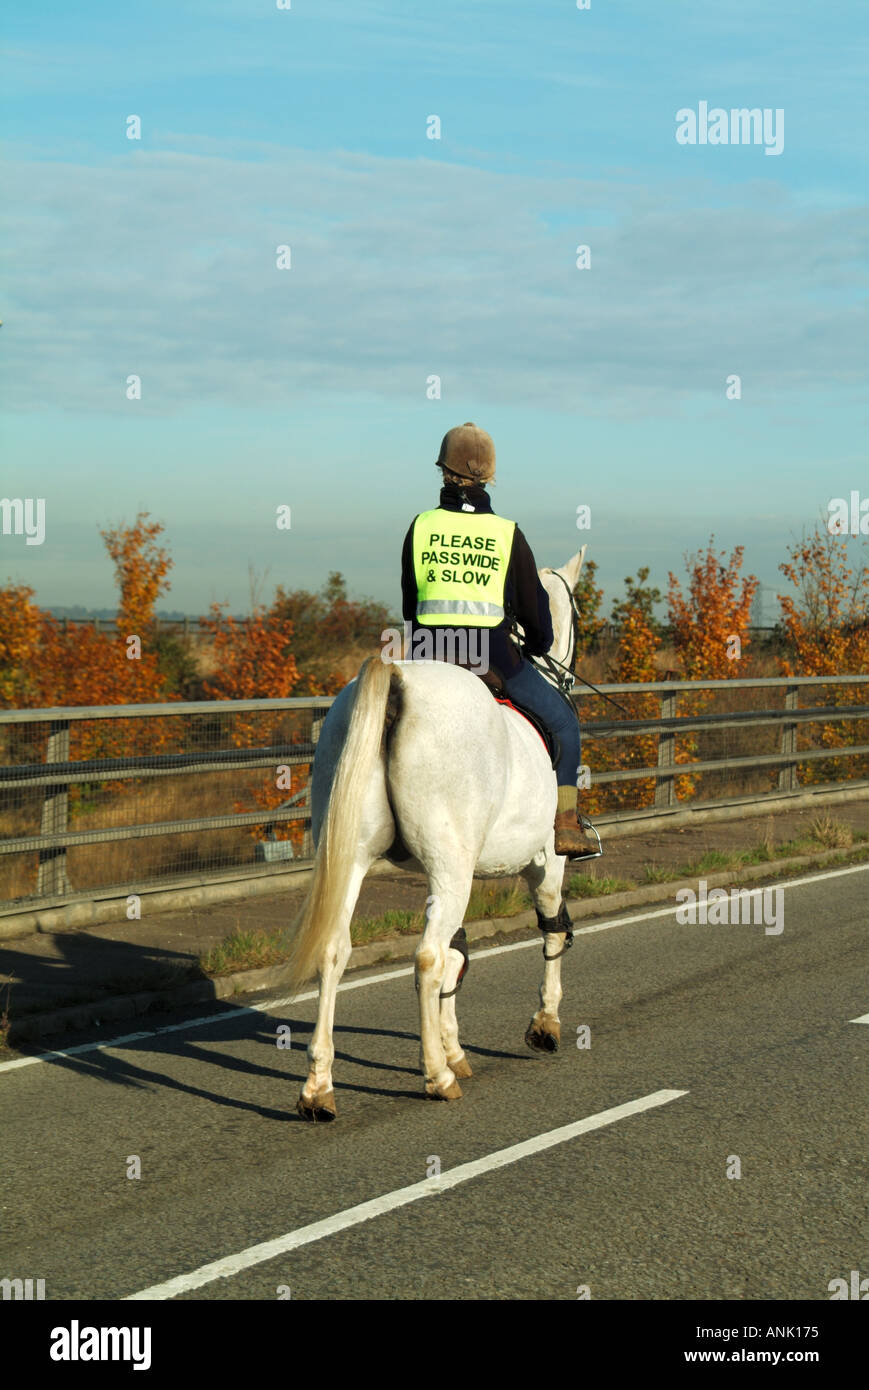 Viz haut Vue arrière de femme horse rider sur pont routier sur l'autoroute le port de gilet de sécurité haute visibilité vis message large & slow Essex England UK Banque D'Images